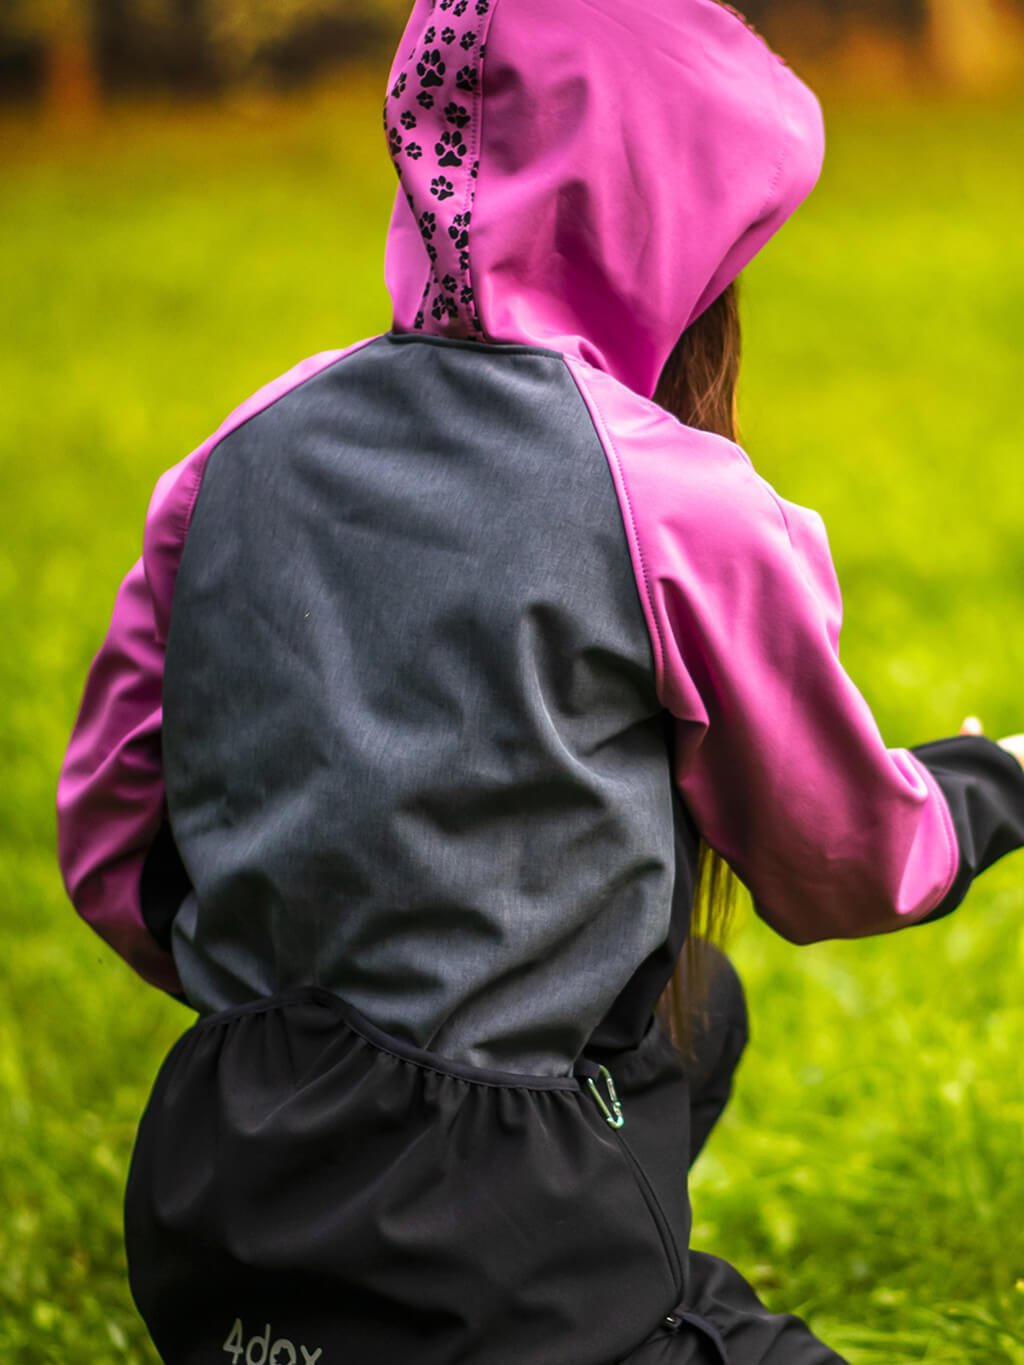 Ladies training jacket lavender year round 4dox